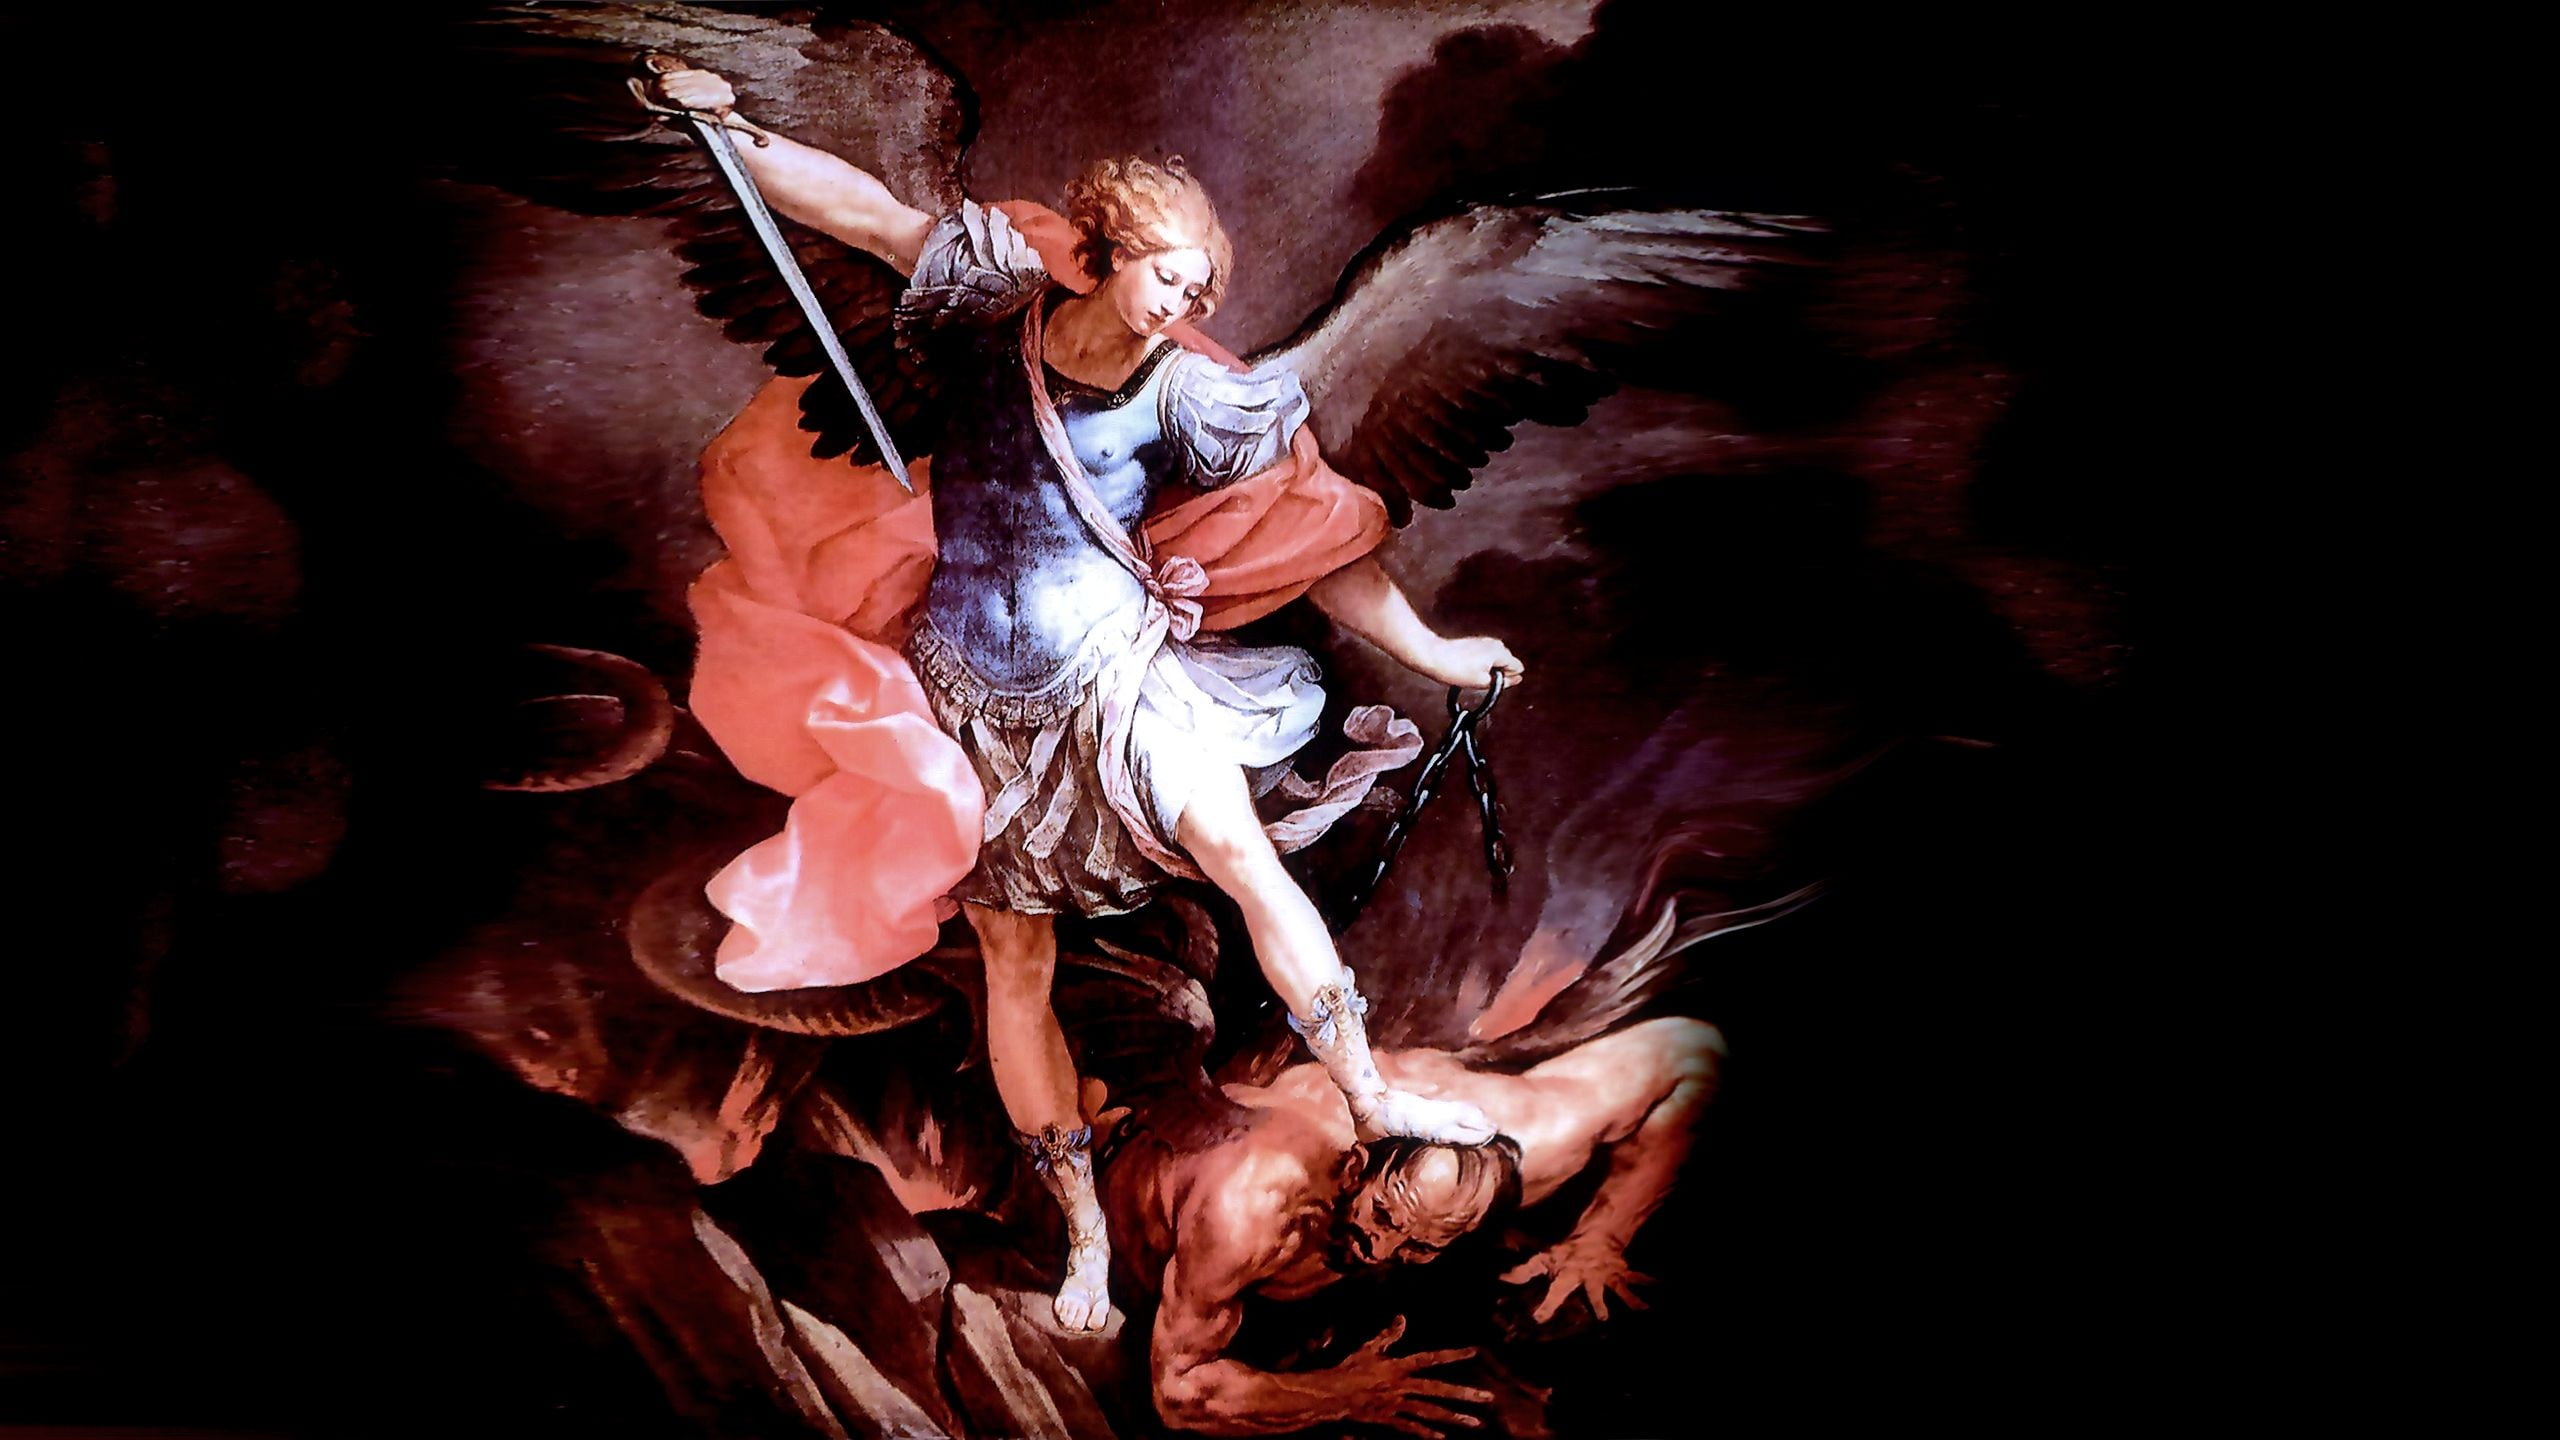 angel vs devil illustration, angel, religion, fantasy art, Michael HD wallp...